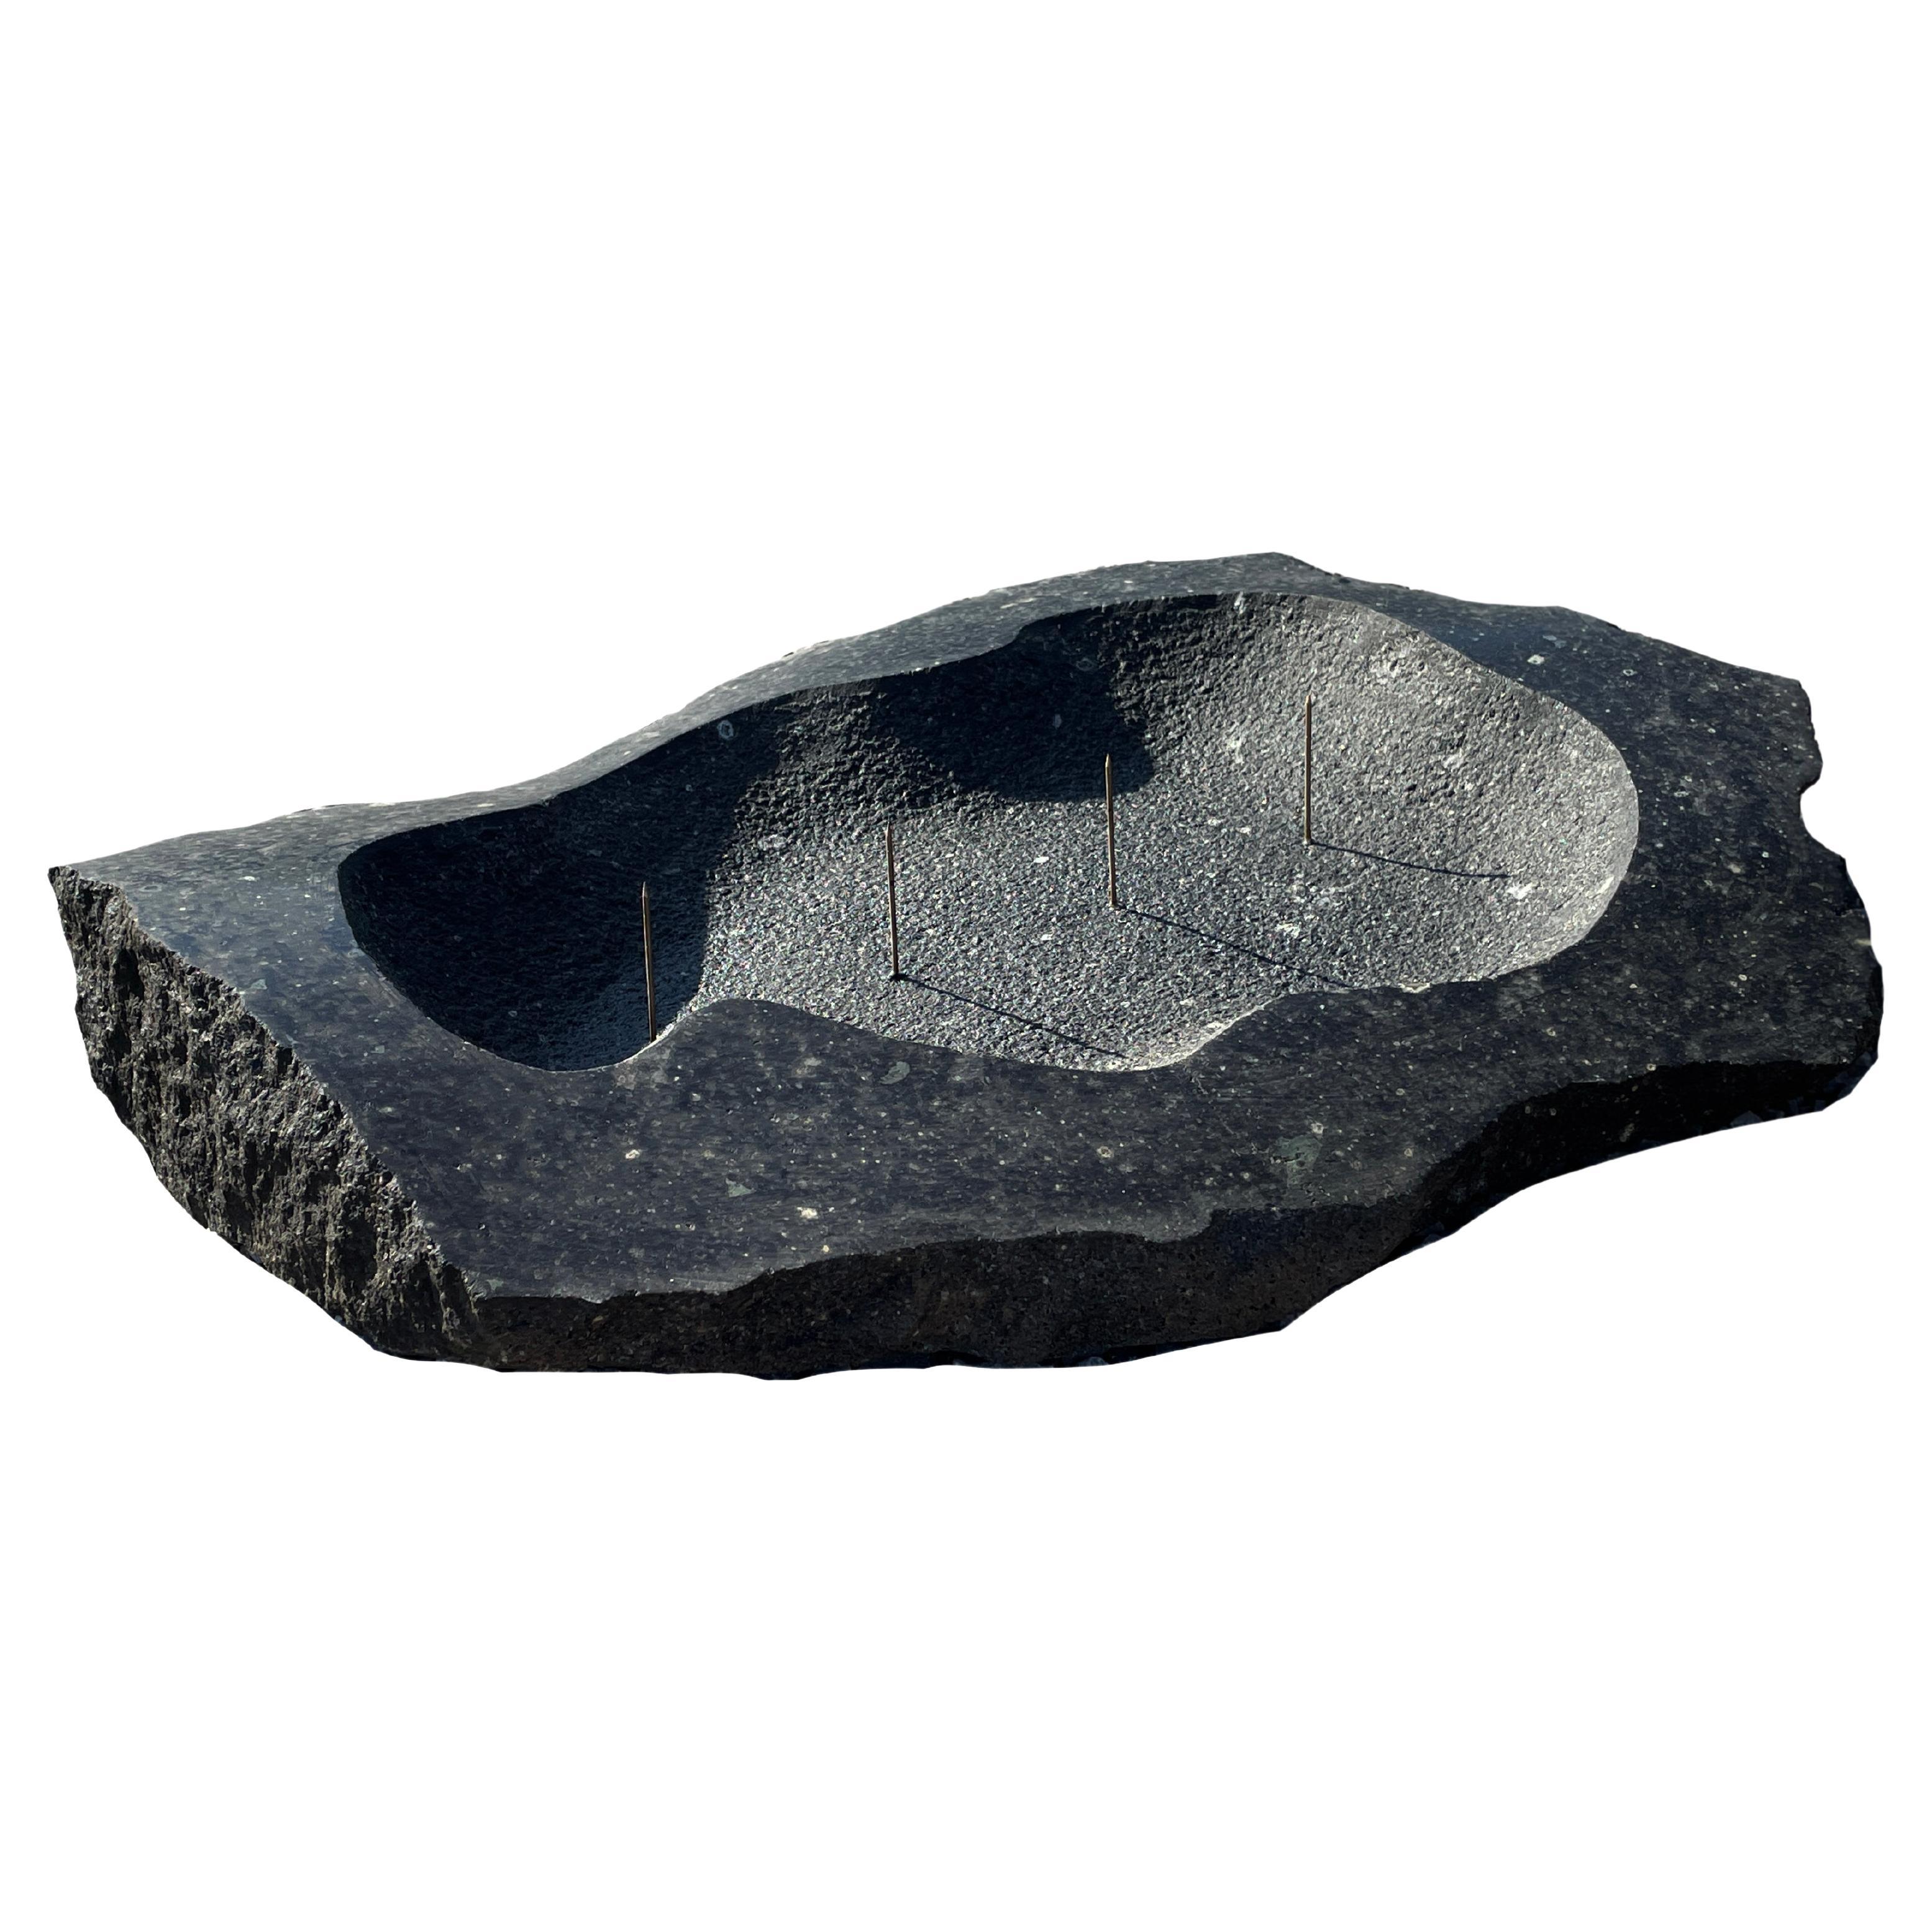 Contemporary Candelabra from Granite Stone by Desia Ava